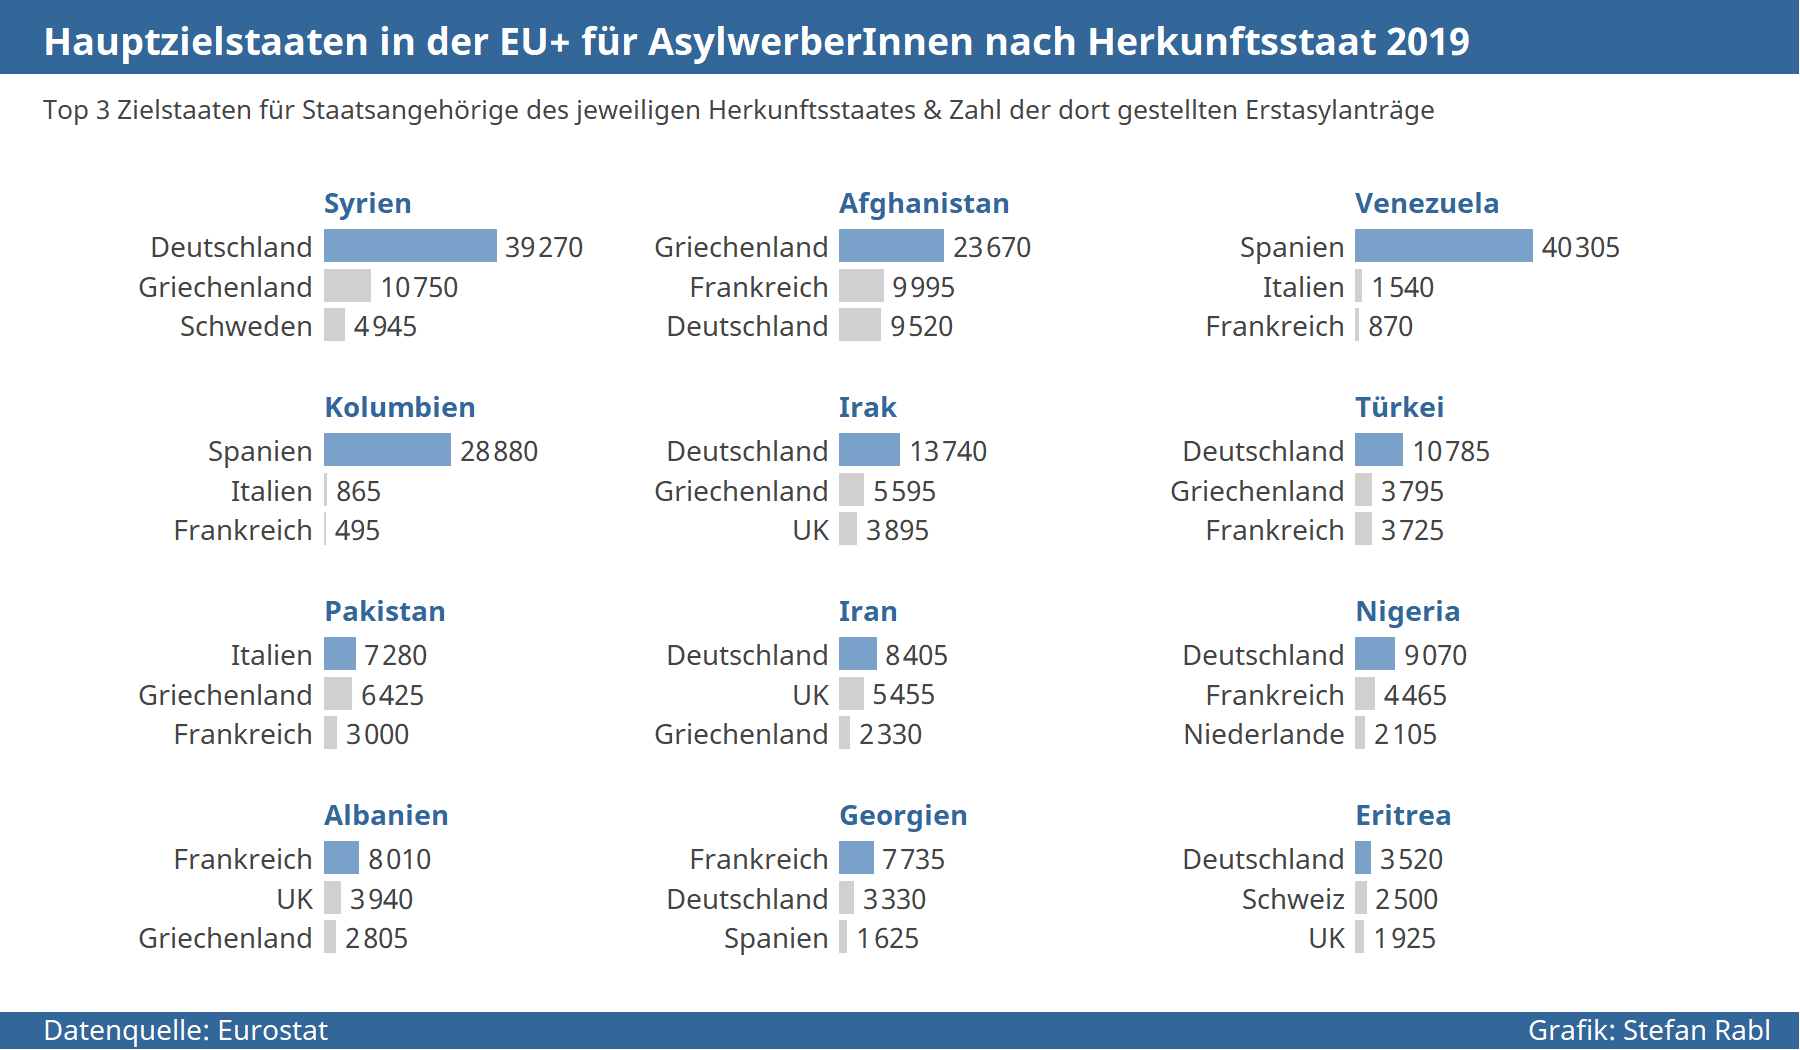 Grafik: Hauptzielstaaten für Asylsuchende einzelner Herkunftsstaaten